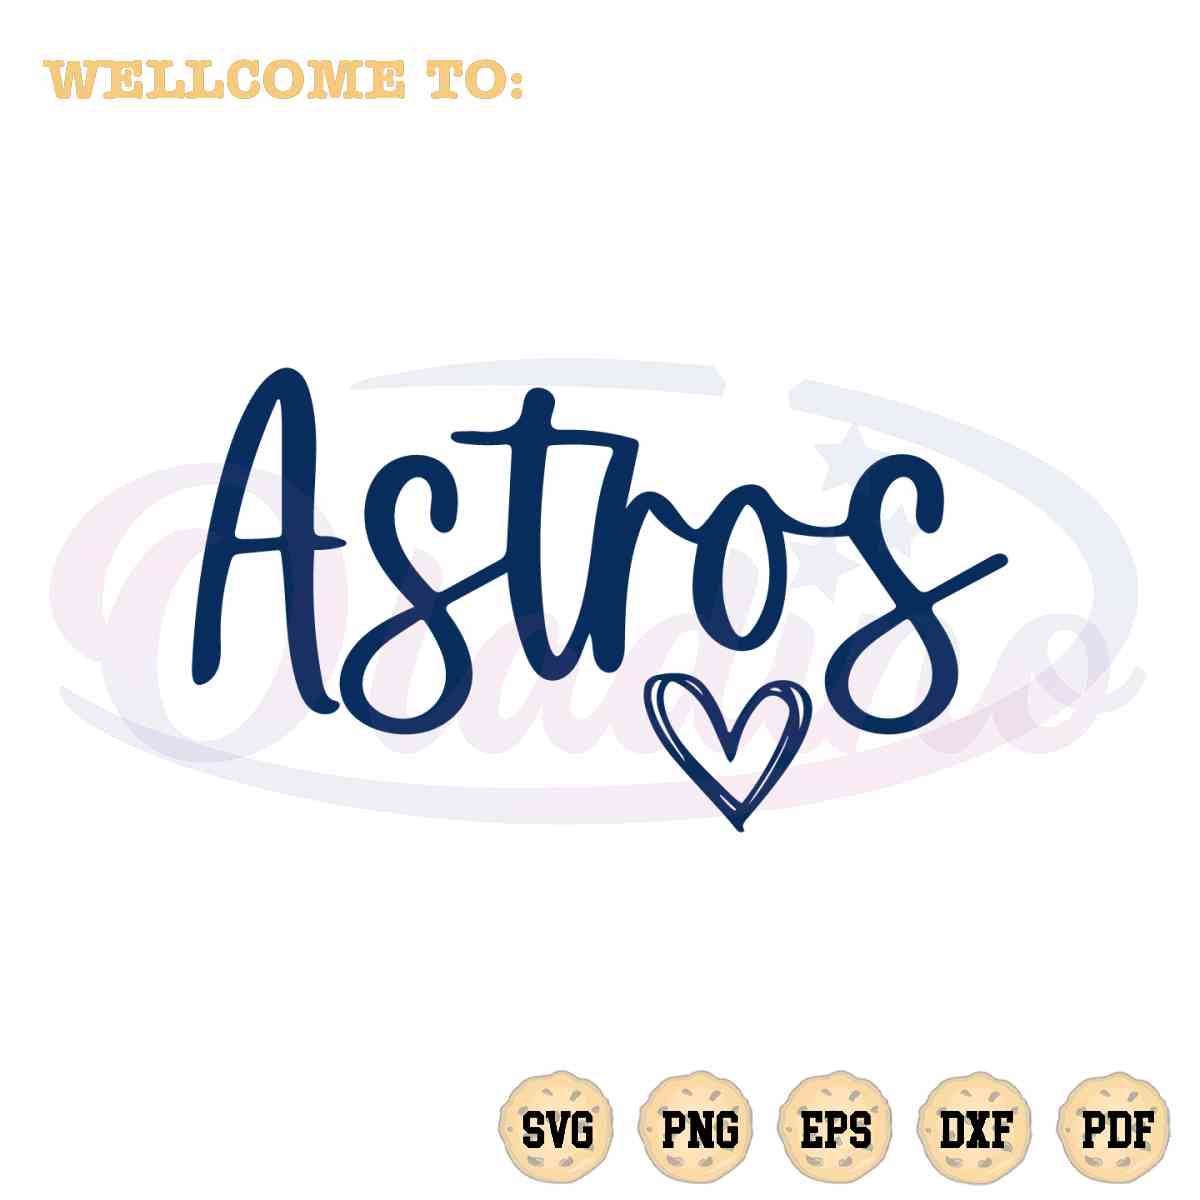 cute-astros-baseball-team-mlb-svg-houston-astros-cutting-file